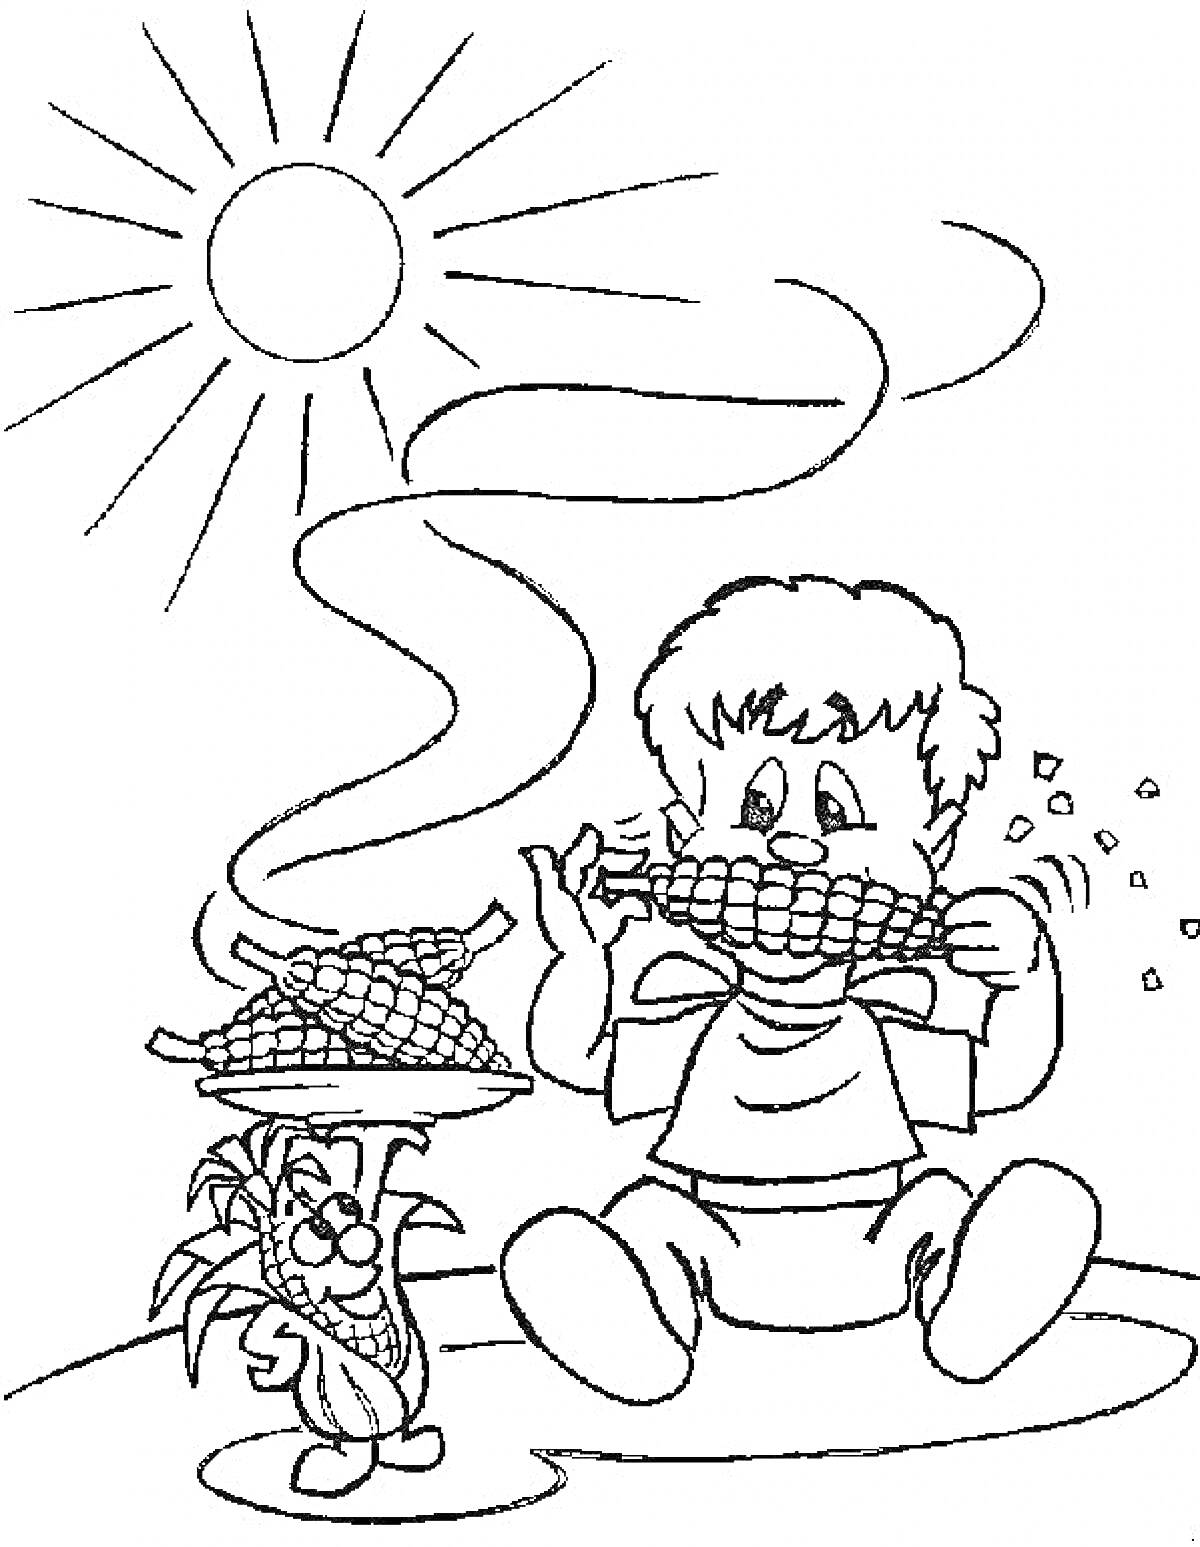 Раскраска Ребенок, кушающий кукурузу под солнцем, рядом с антропоморфной кукурузой на посуде